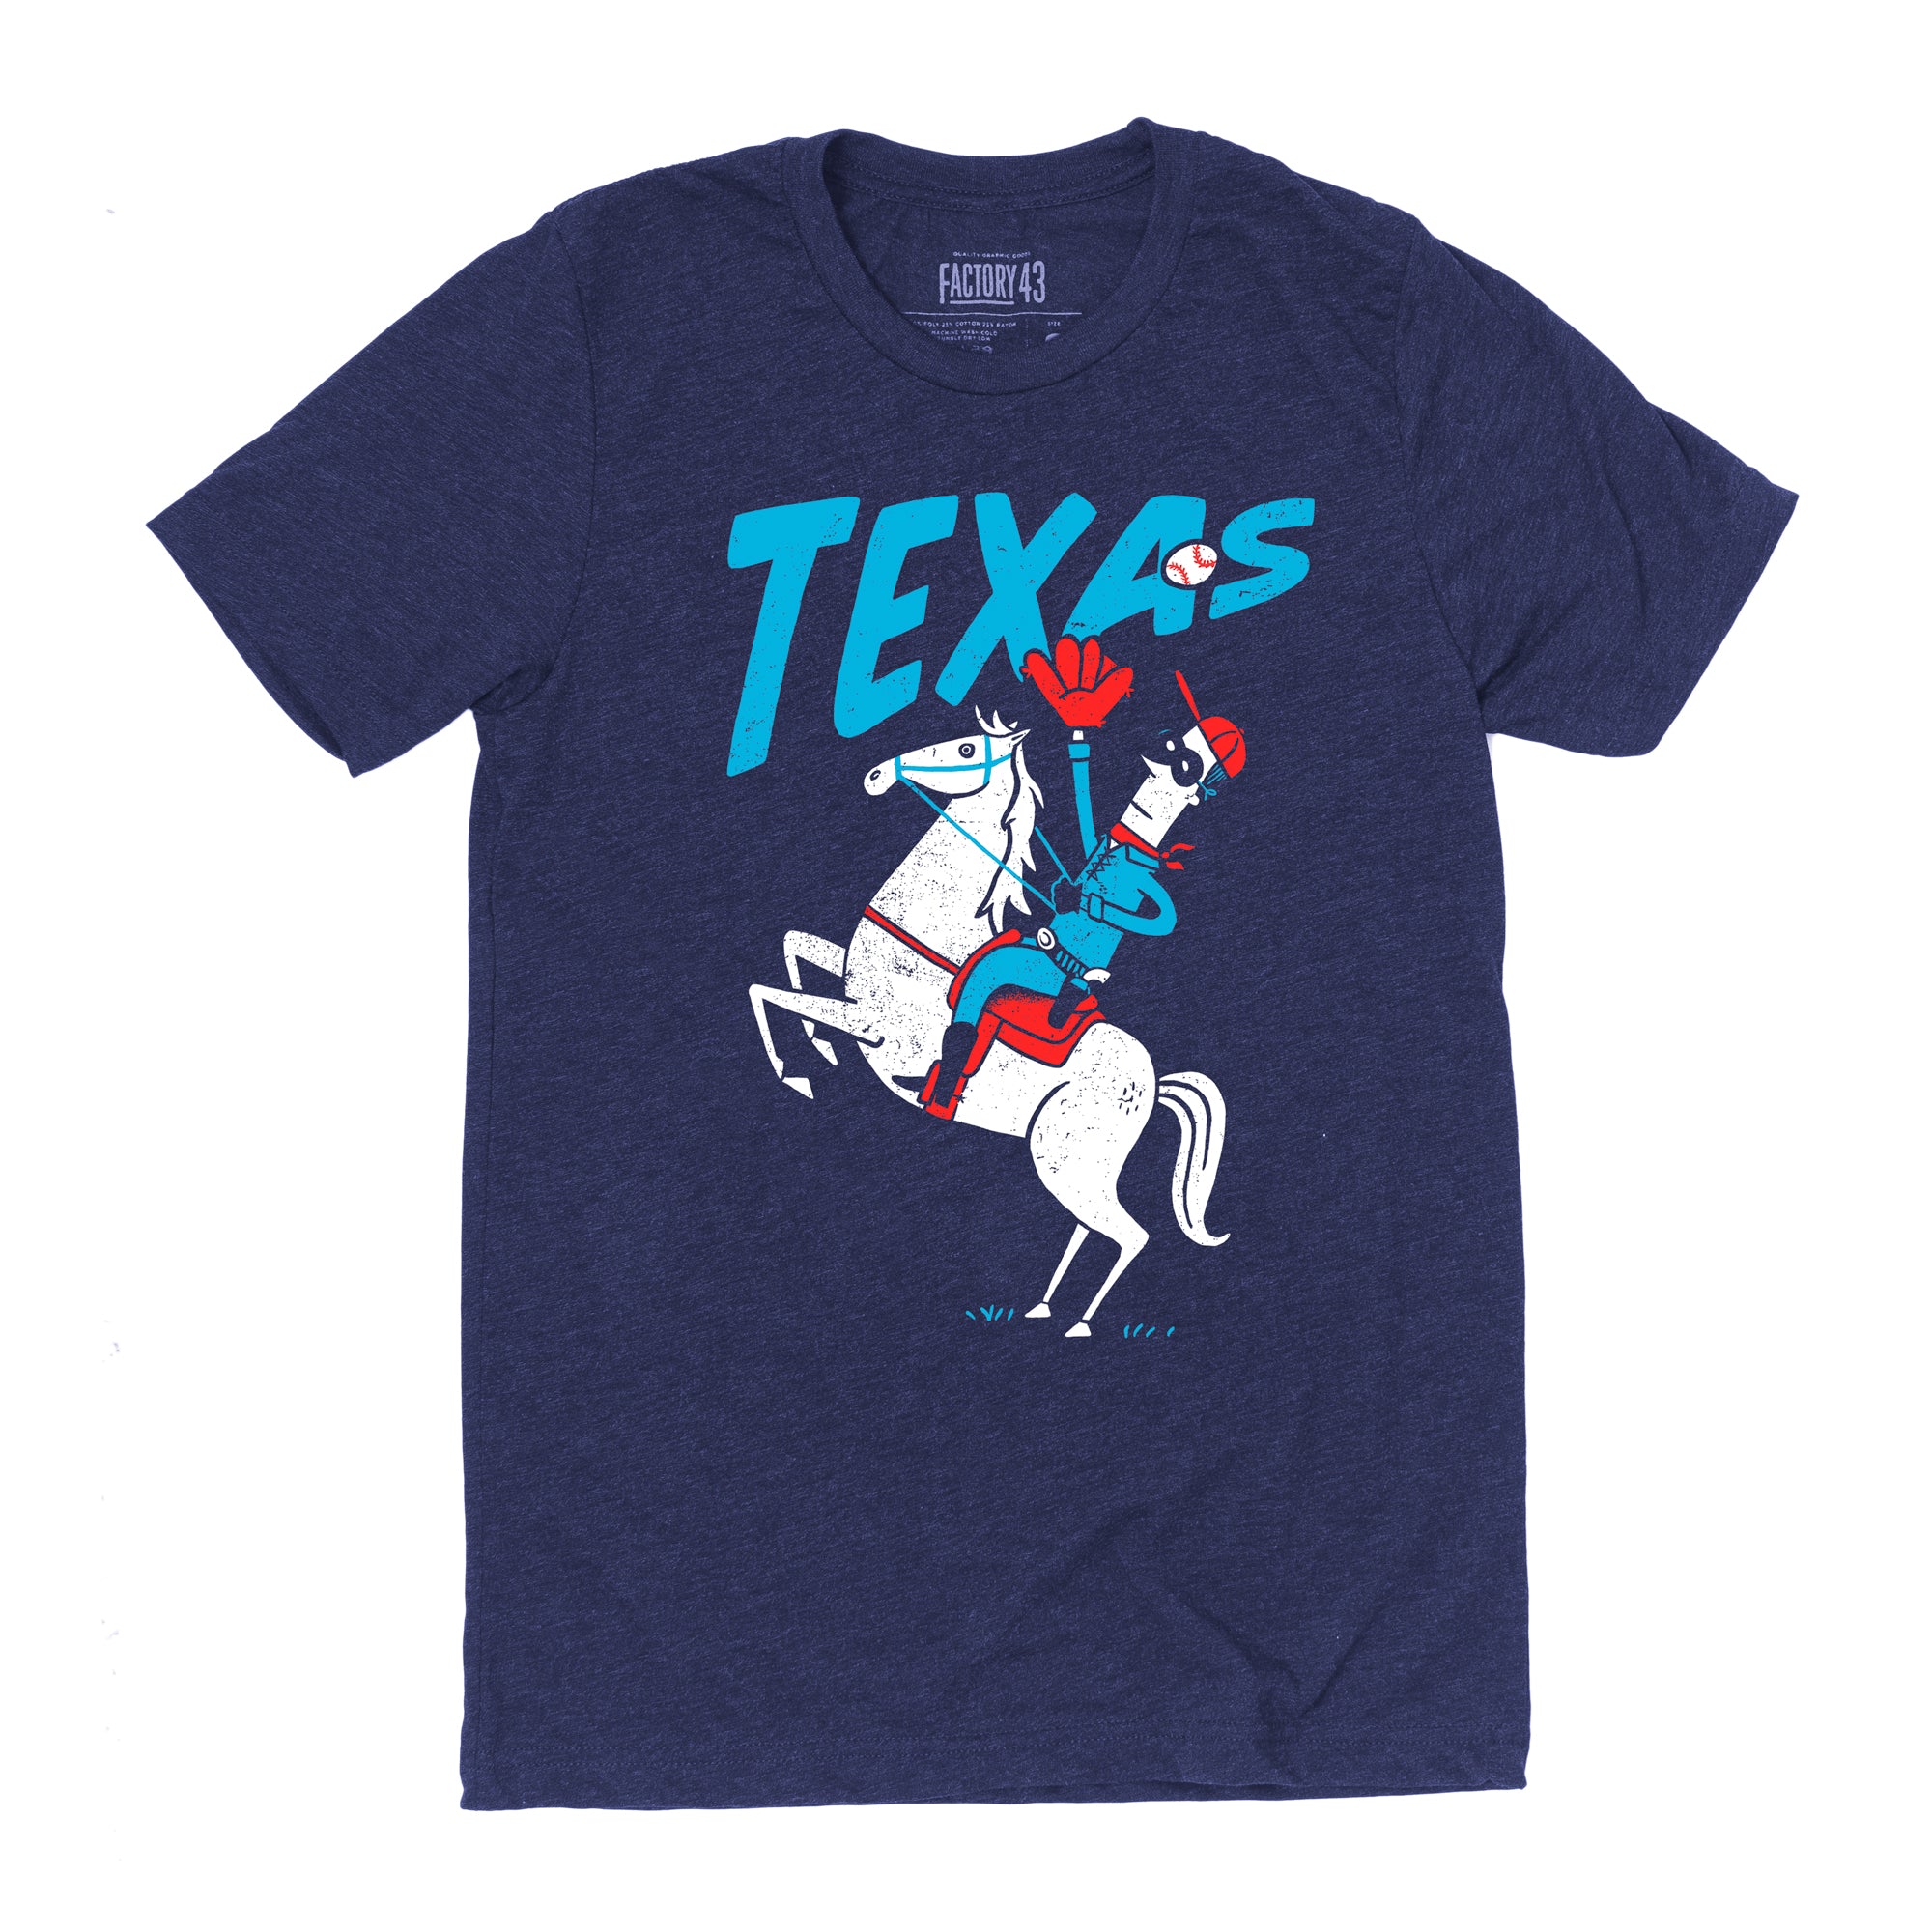 Texas baseball tee